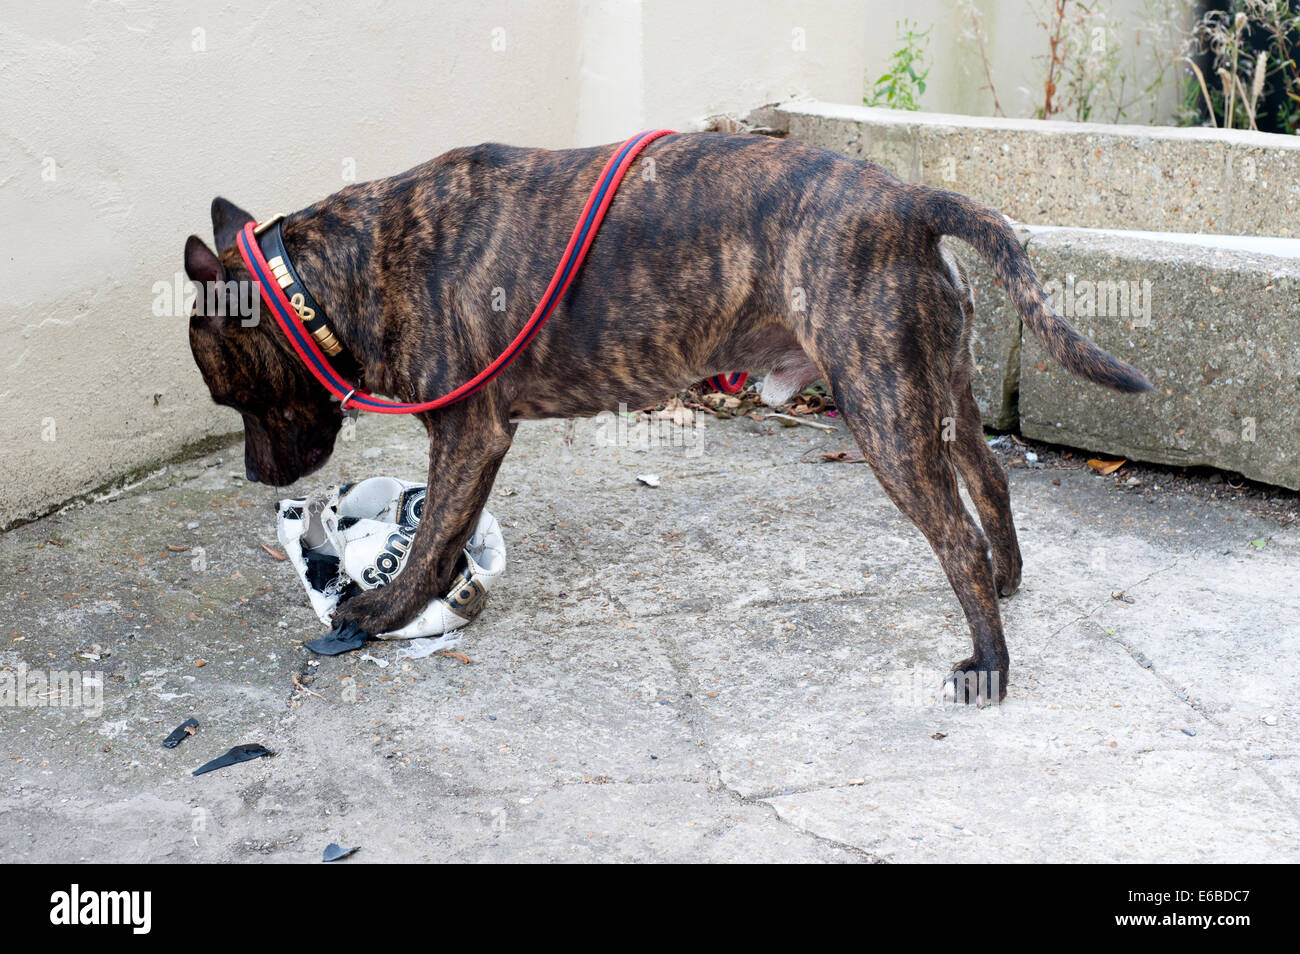 Staffordshire Bull Terrier mâle chien utilise ses puissantes mâchoires pour détruire un foot Banque D'Images